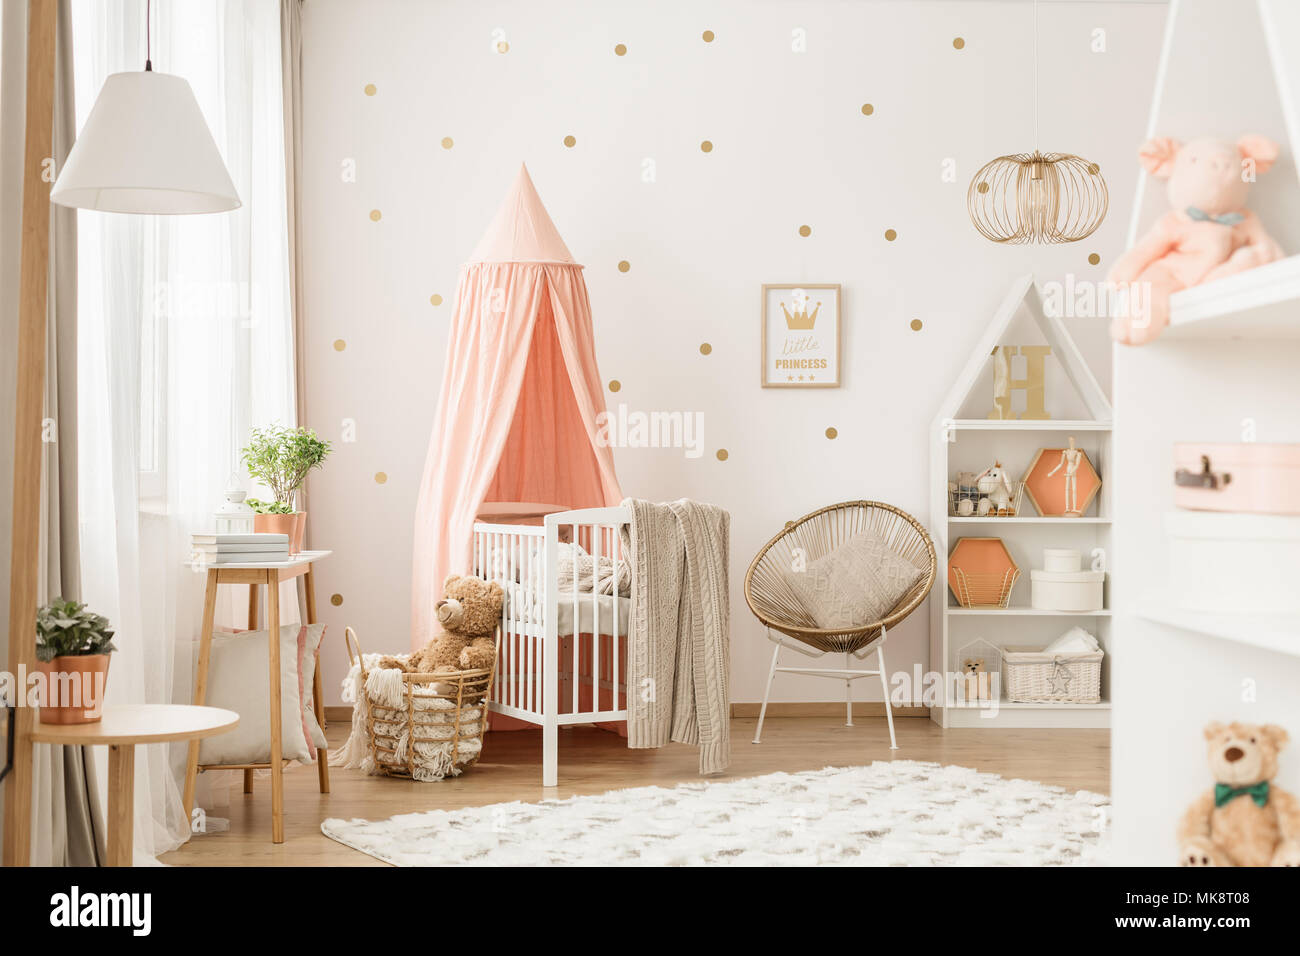  Decoración de habitación de bebé, tienda de bebé, accesorios de  fotografía, decoración de dormitorio de niños, guirnalda de cuentas de  madera (color rosa y blanco, tamaño: 31.5-39.4 in) : Hogar y